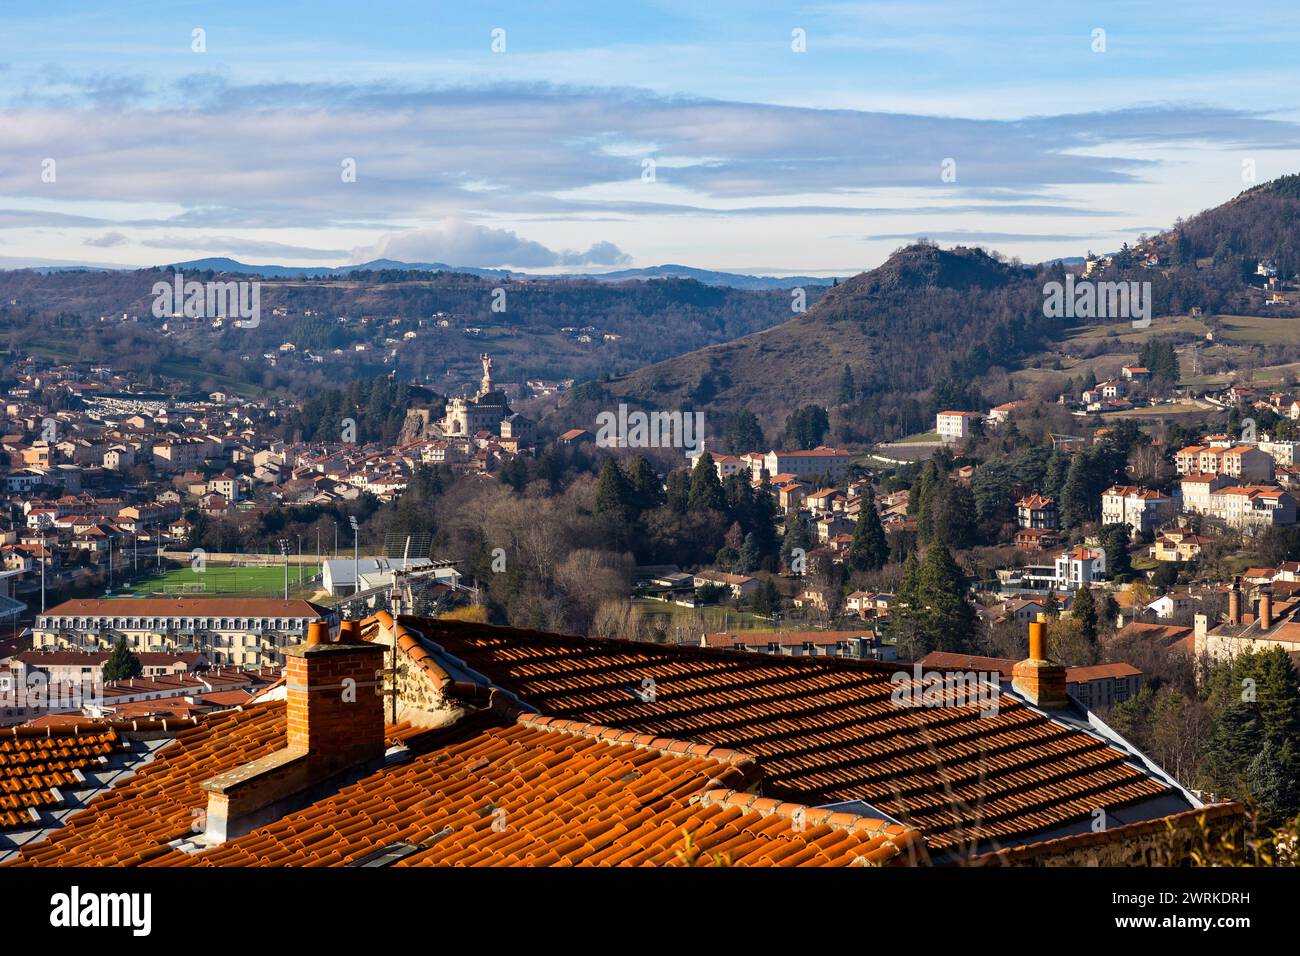 Panorama sur l'ouest de la ville et le Sanctuaire de Saint-Joseph-de-Bon-Espoir depuis le Rocher Corneille au Puy-en-Velay en Auvergne Foto Stock